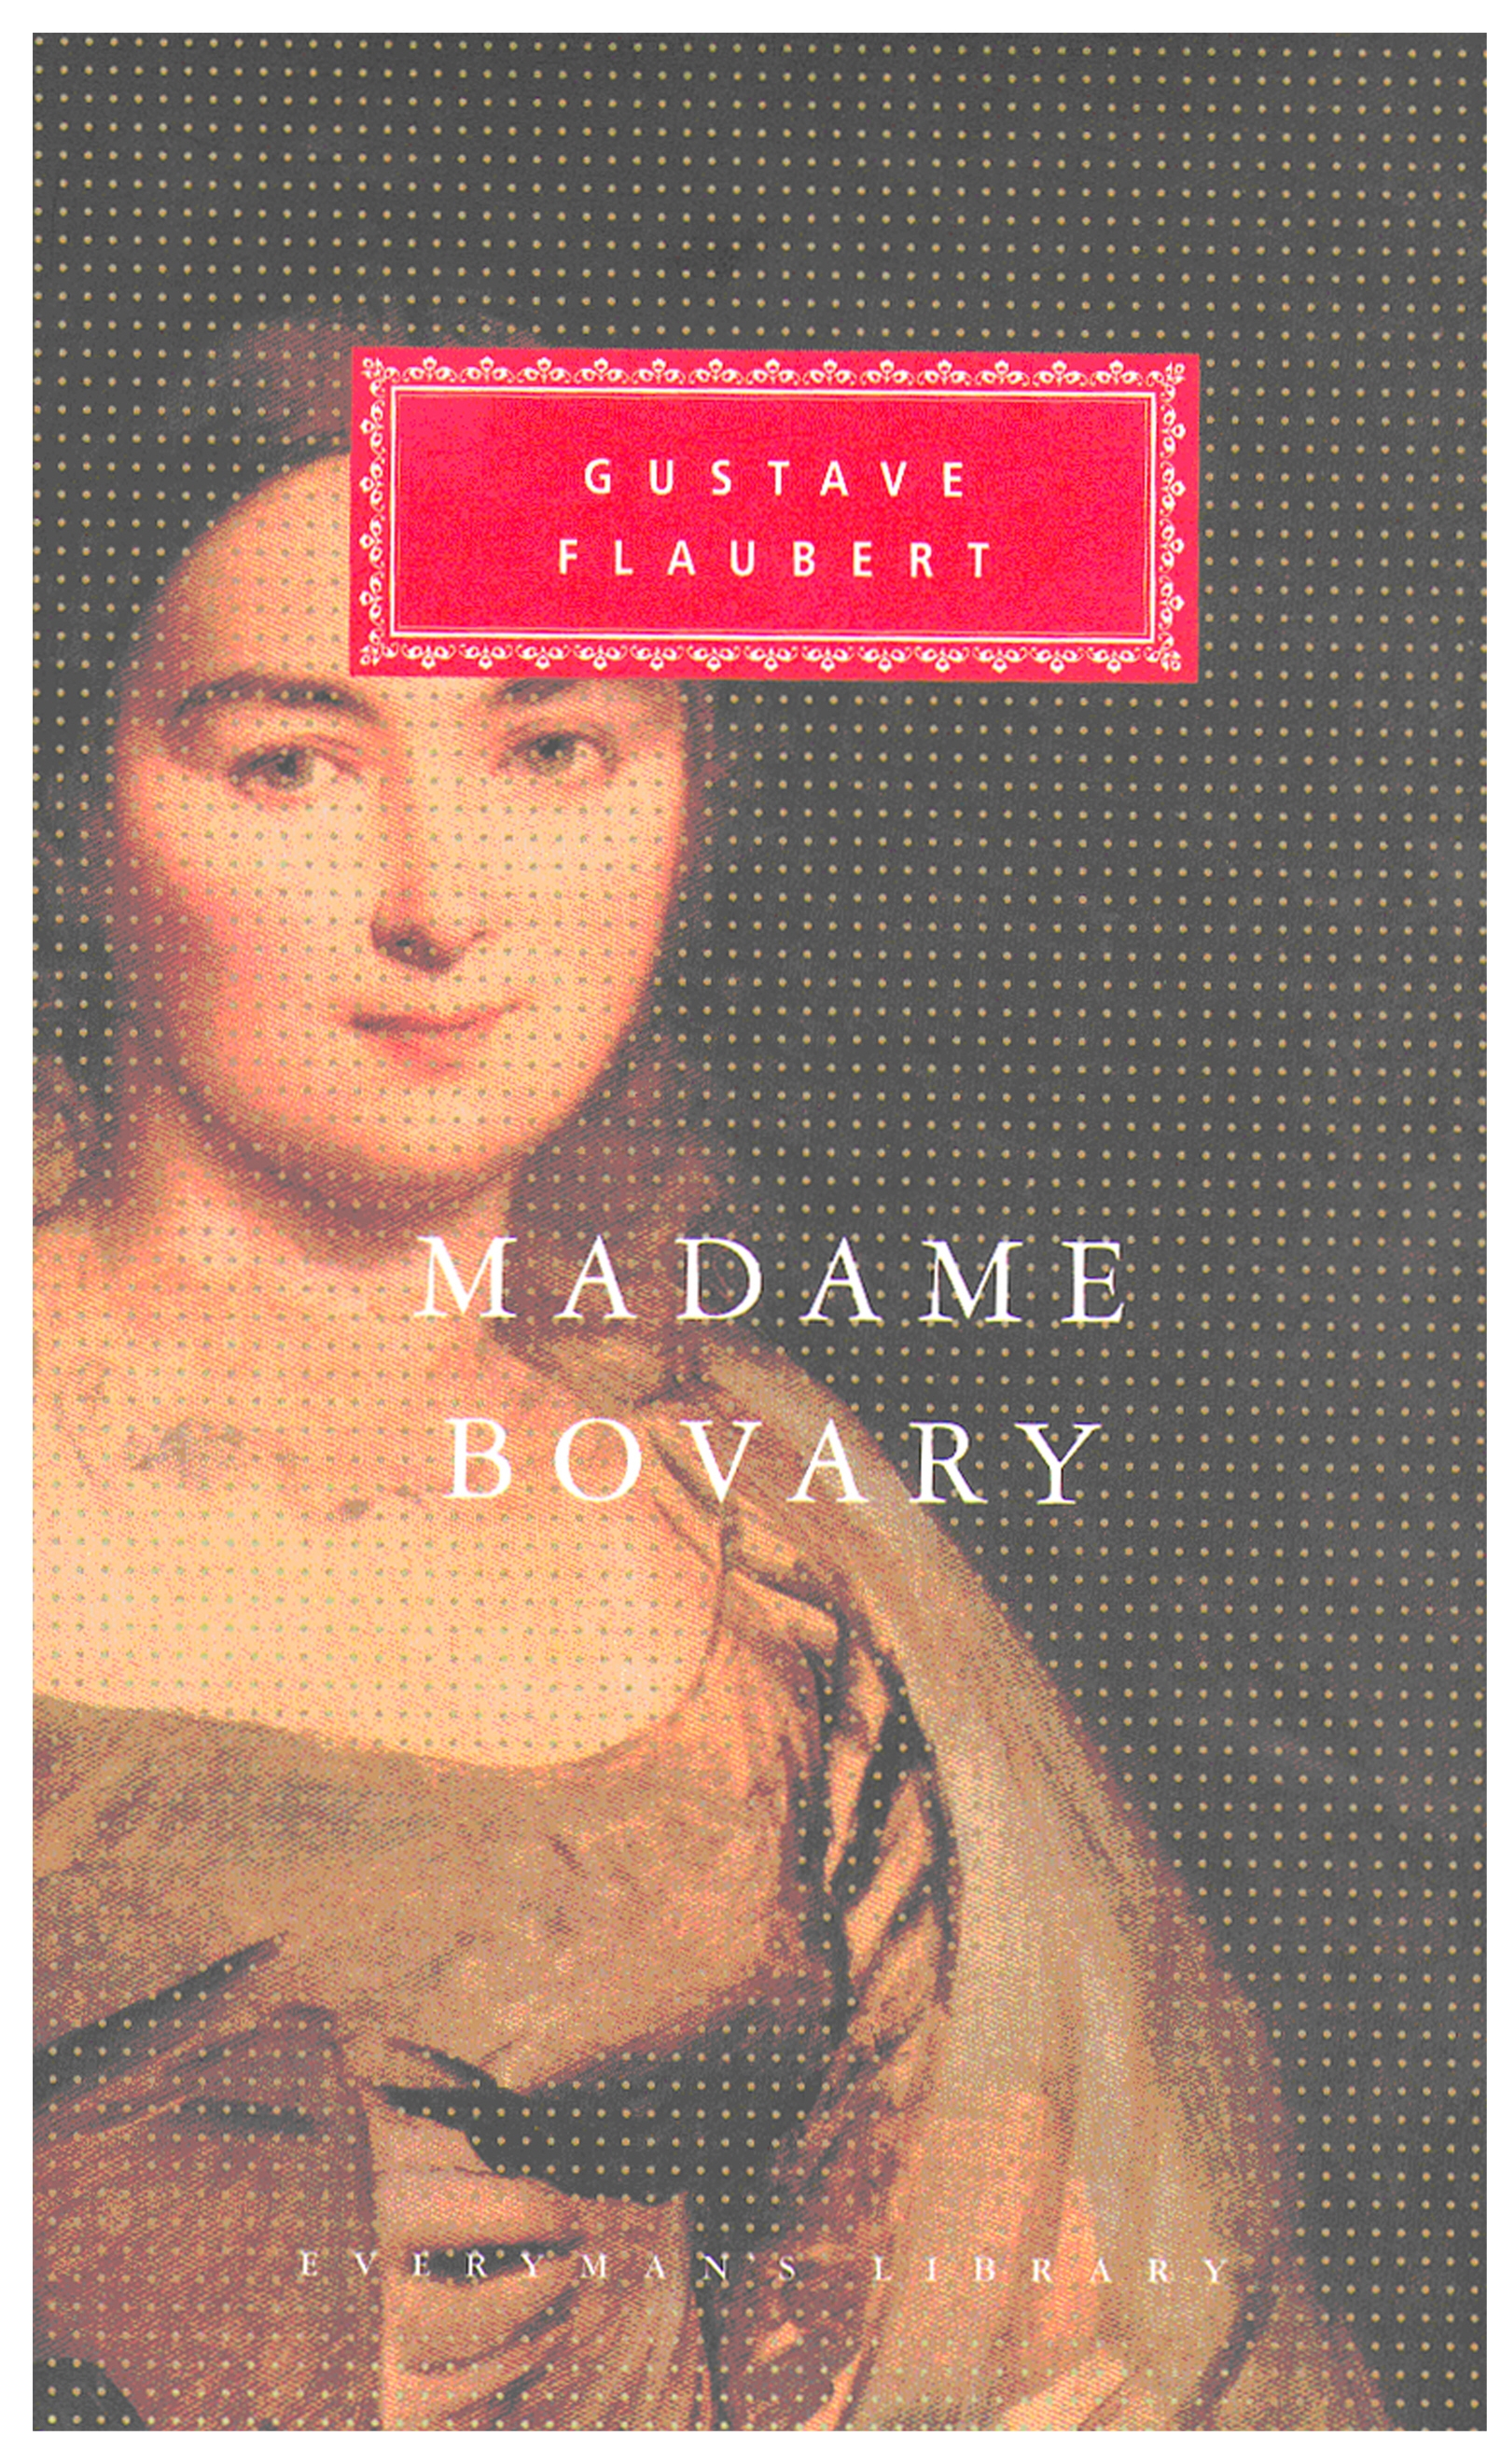 madame bovary trial